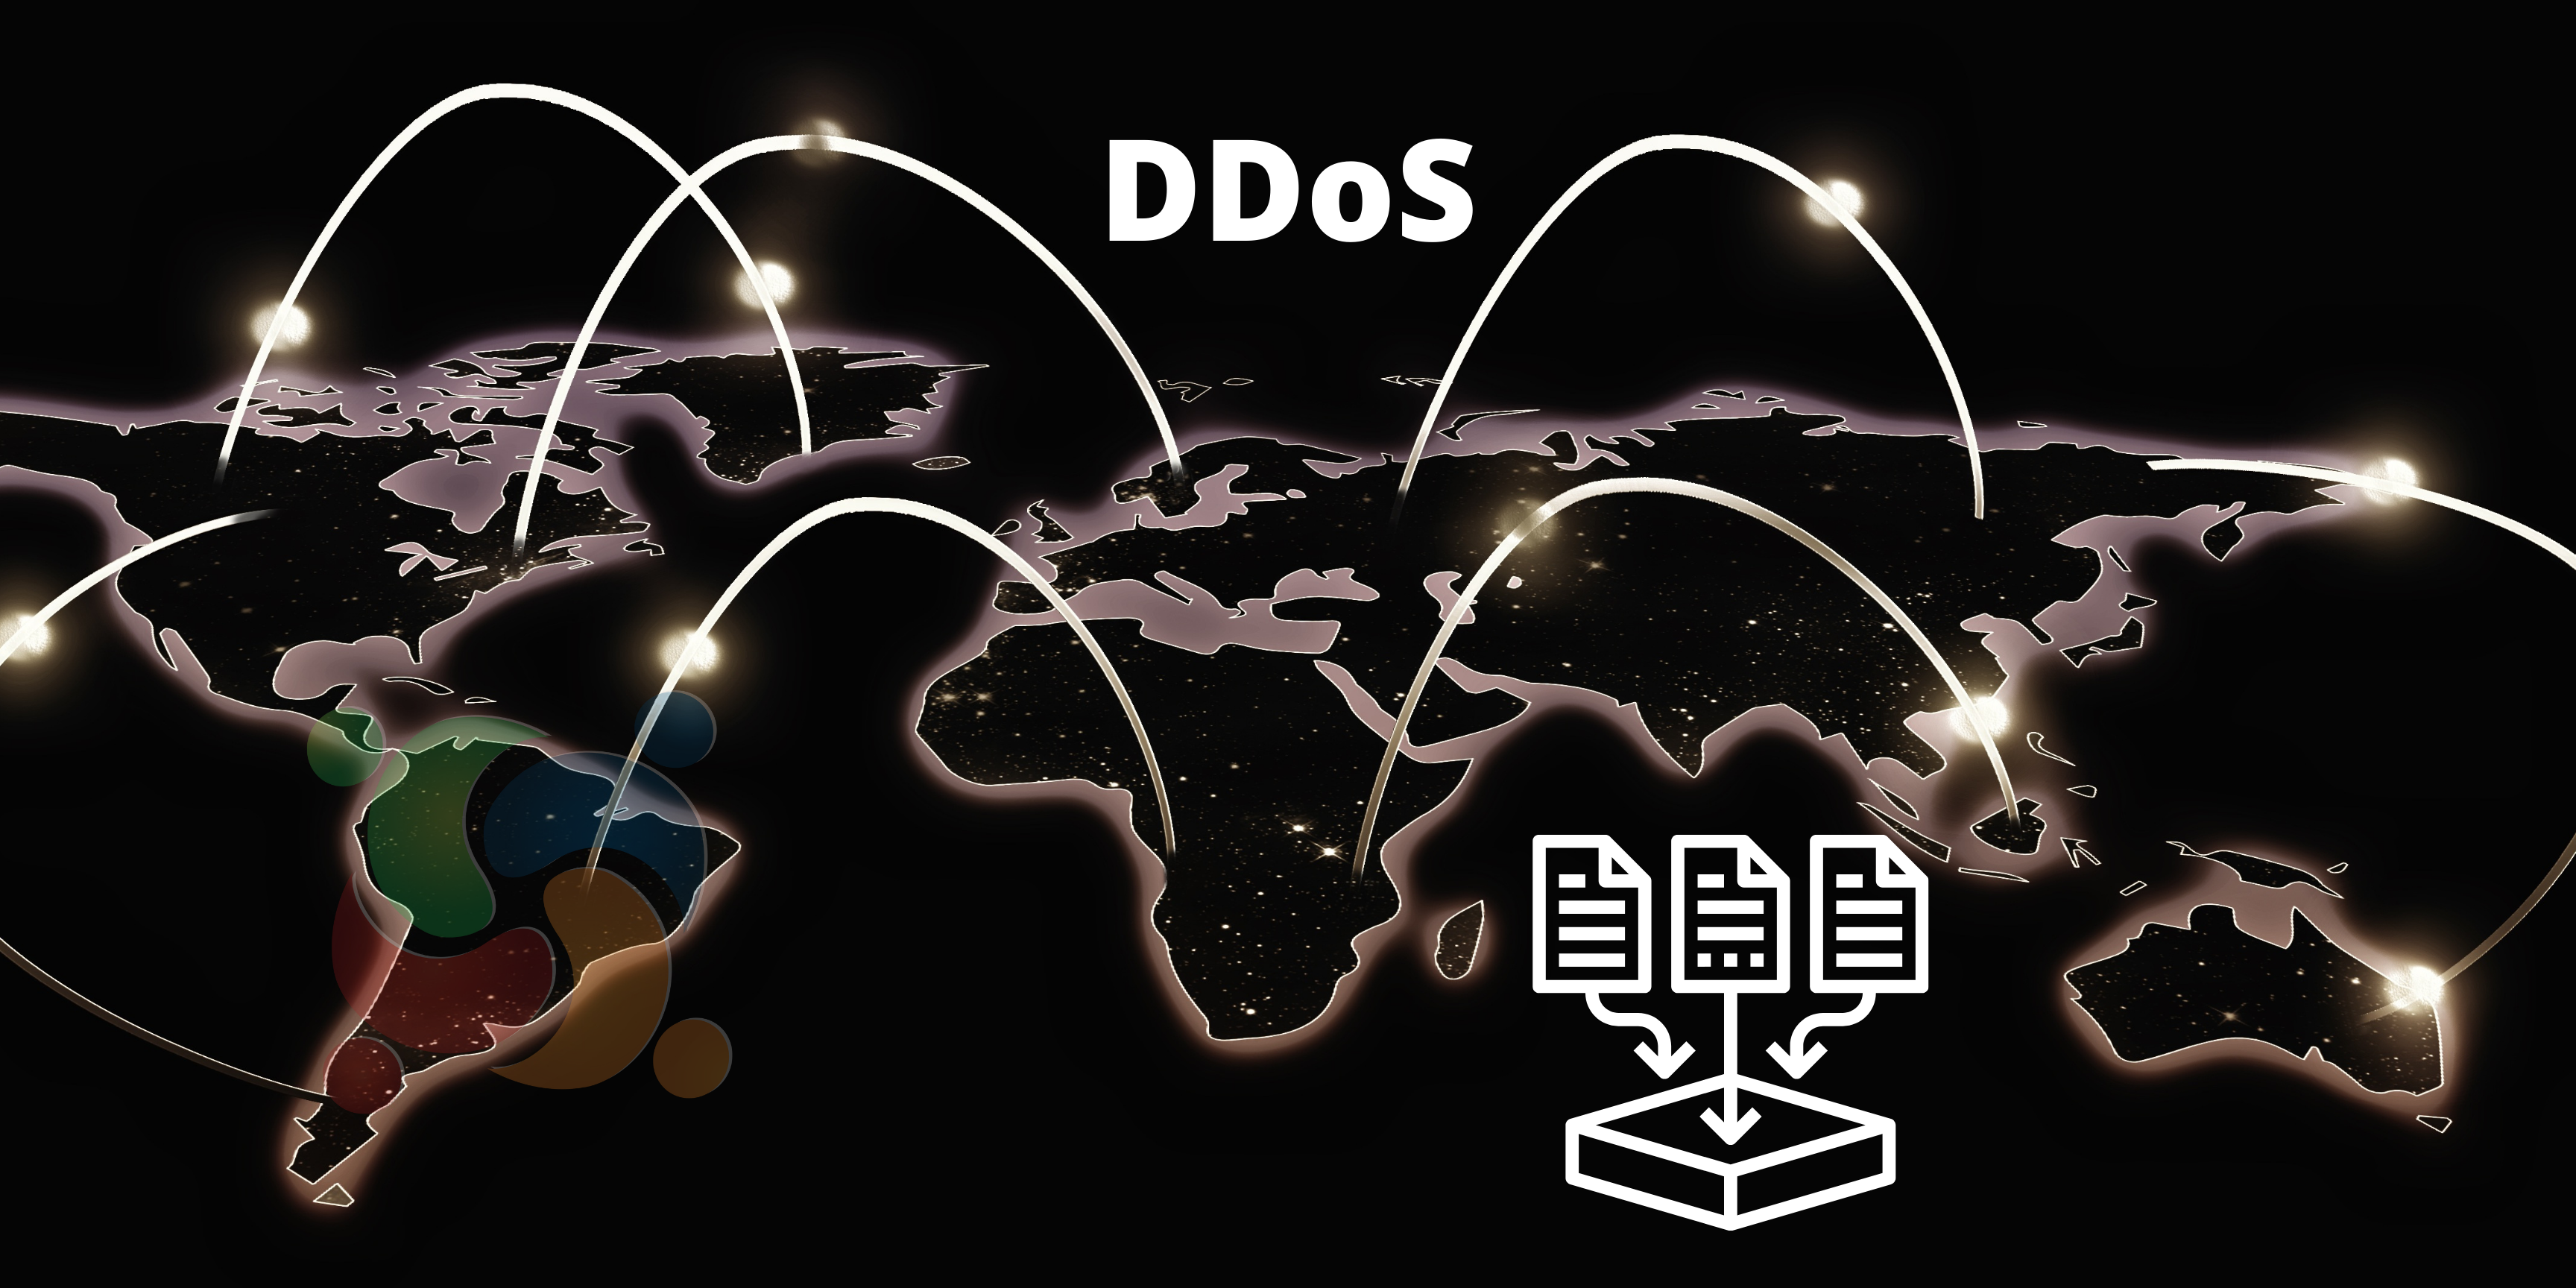 Guia para solução rápida de proteção contra ataques DDoS no seu site!